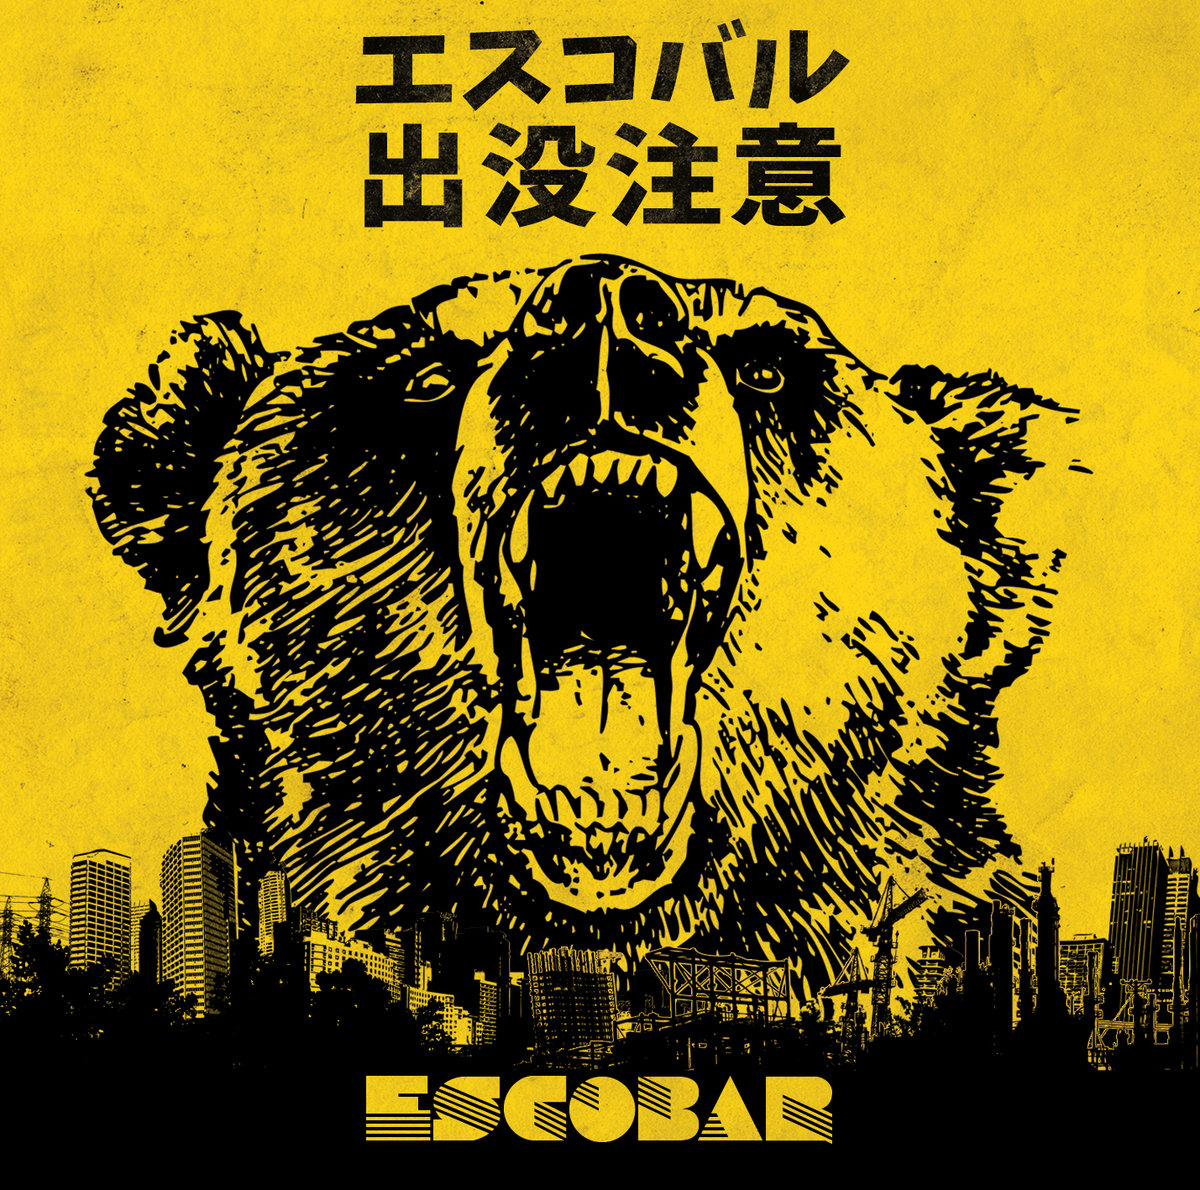 Escobar - s/t - LP